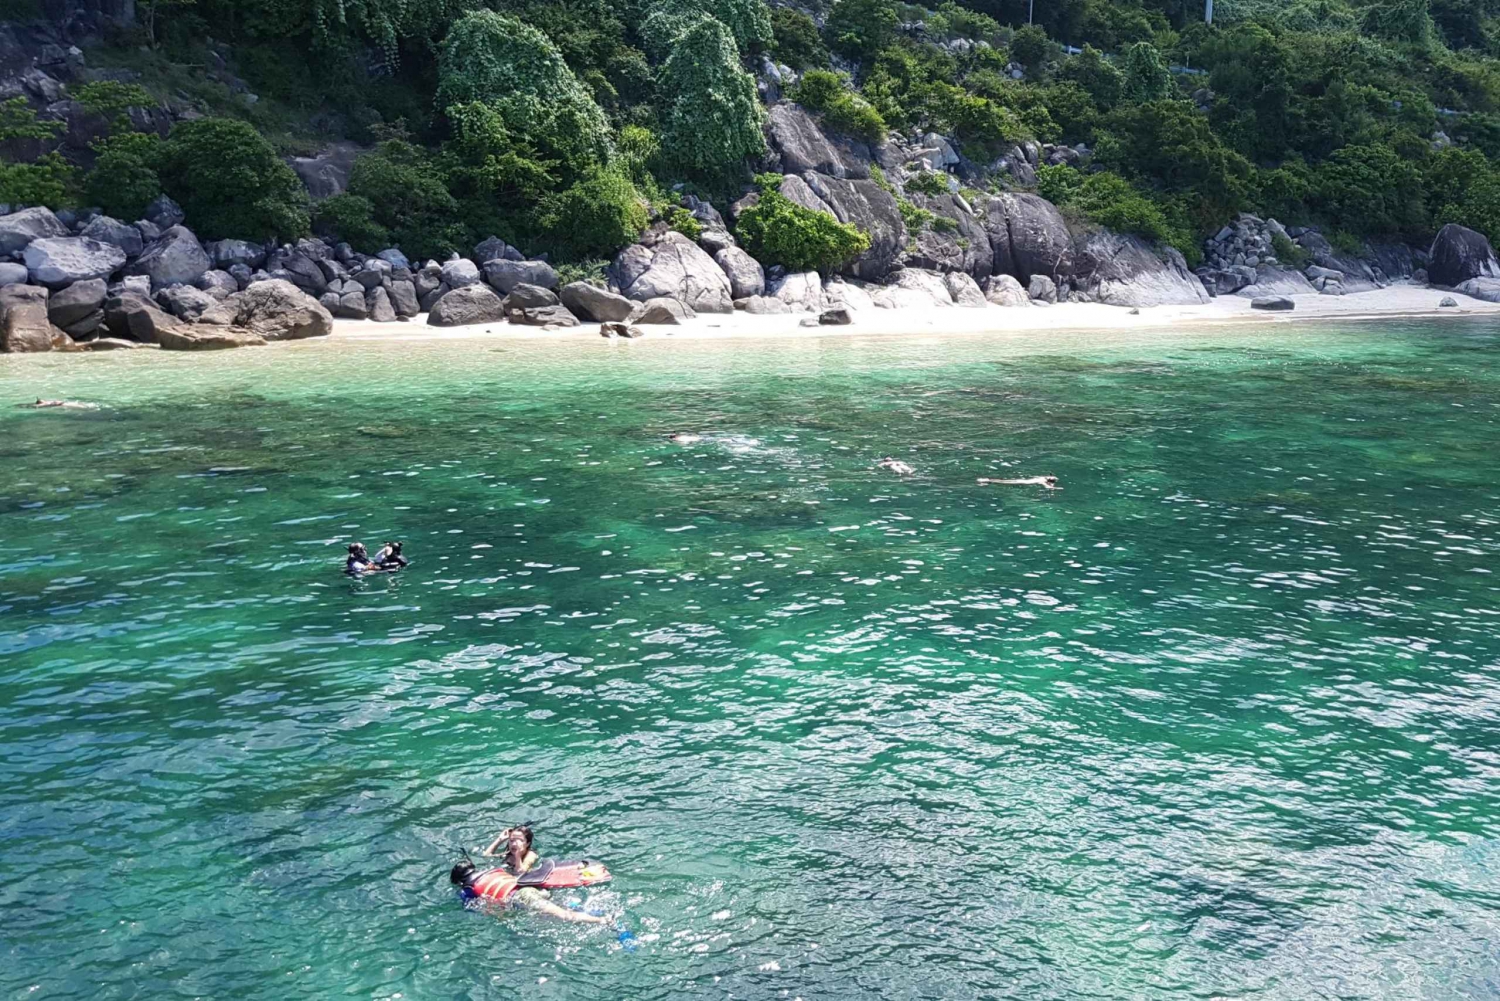 Cham-øen: Snorkeltur